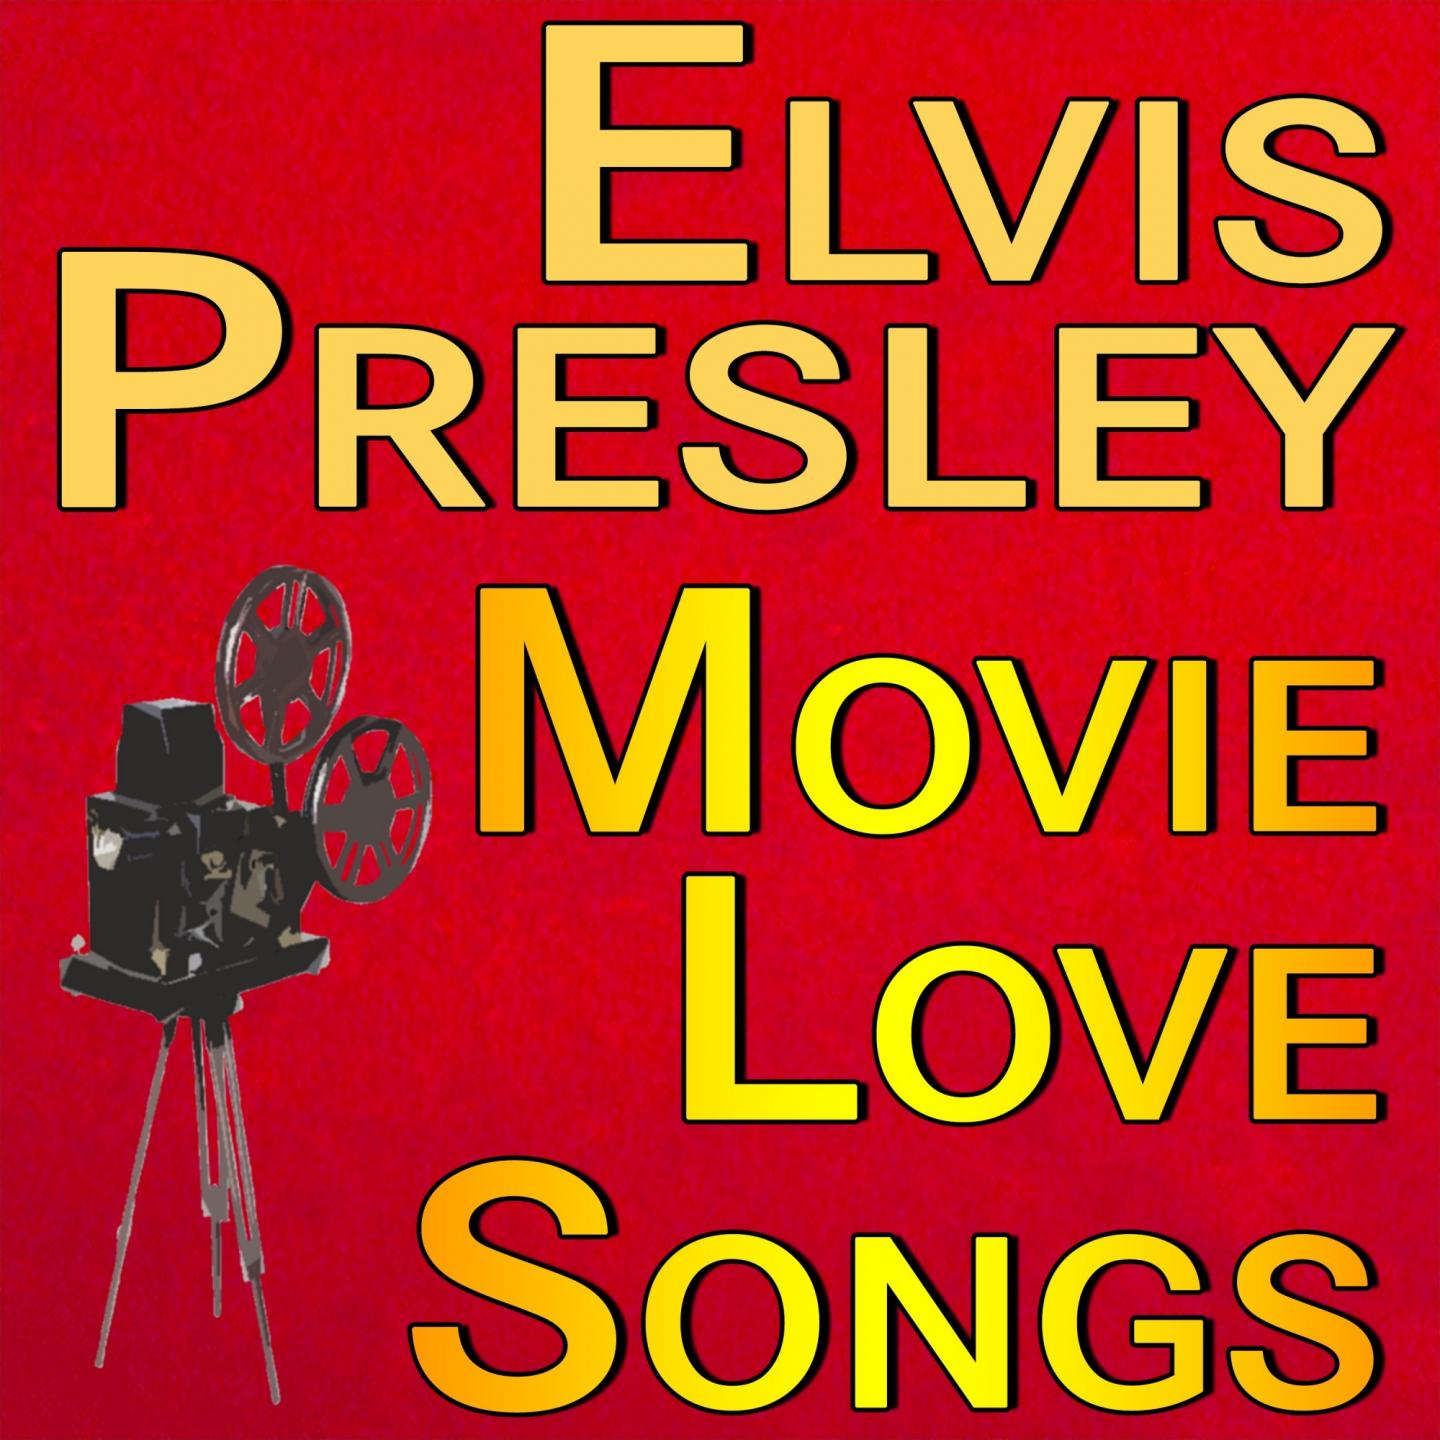 Elvis Presley Movie Love Songs